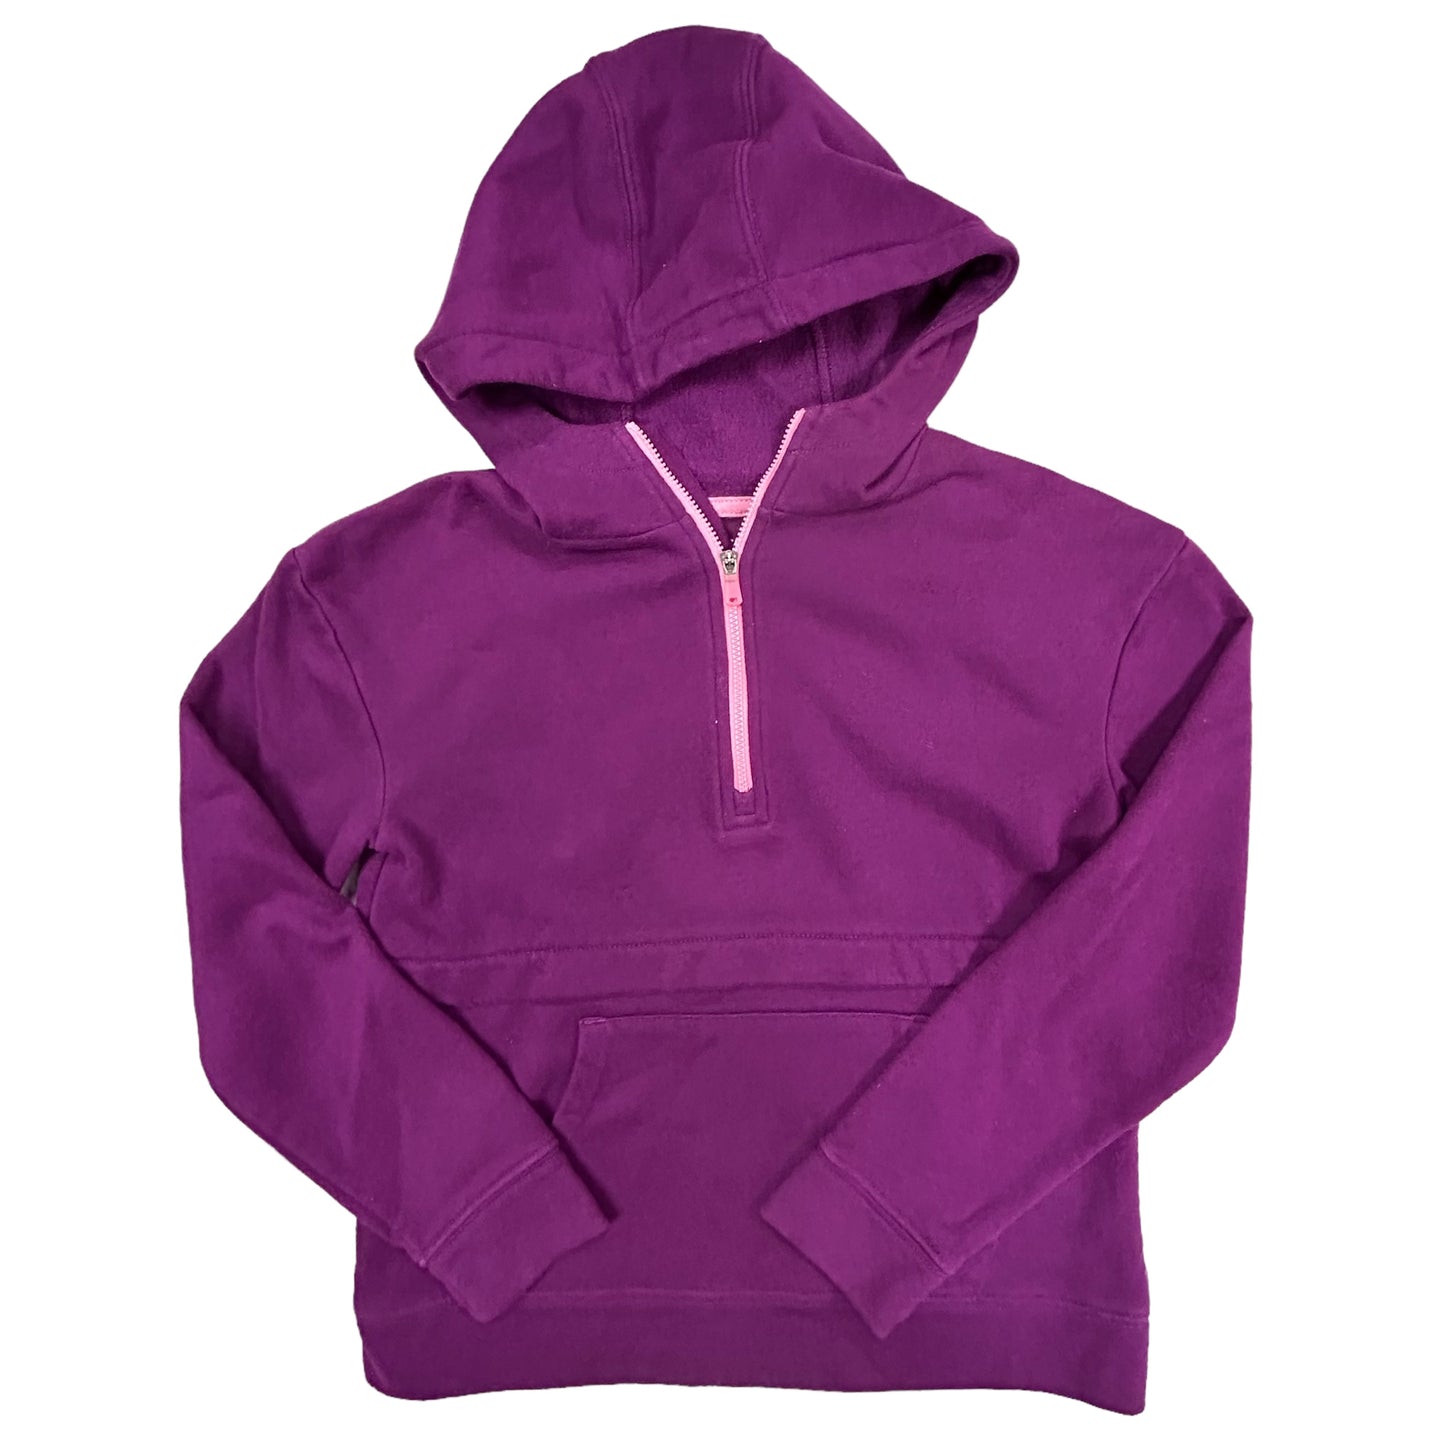 Girls Tek Gear Size 10/12 Purple Fleece Lined Hoodie